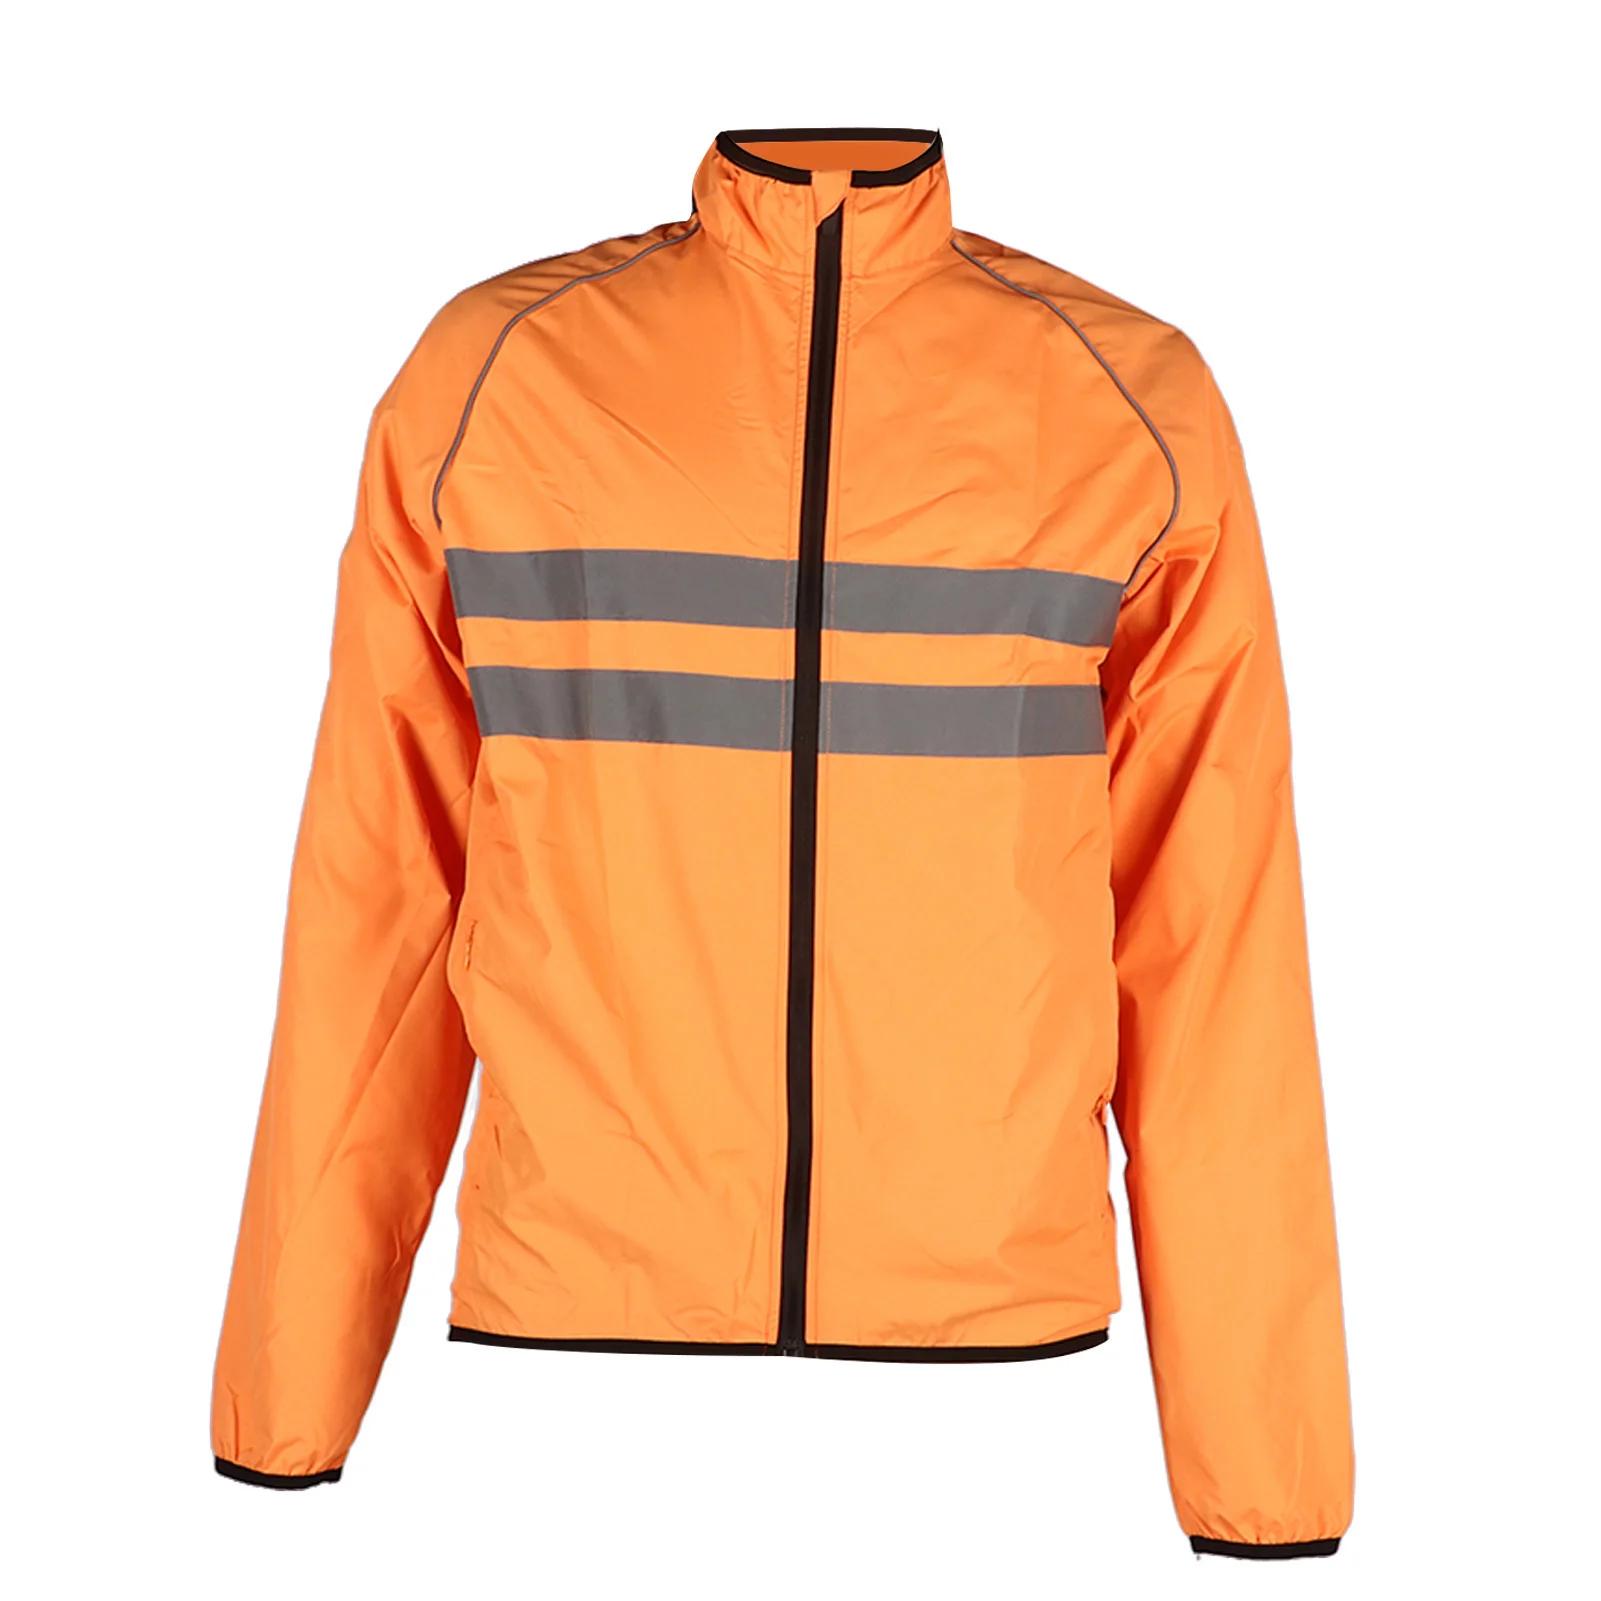 사이클링 재킷, 다중 지퍼 포켓, 주황색 탄성 스트랩, 반사 재킷 코트, 폴리에스터, 얇고 통기성, 자전거 타기